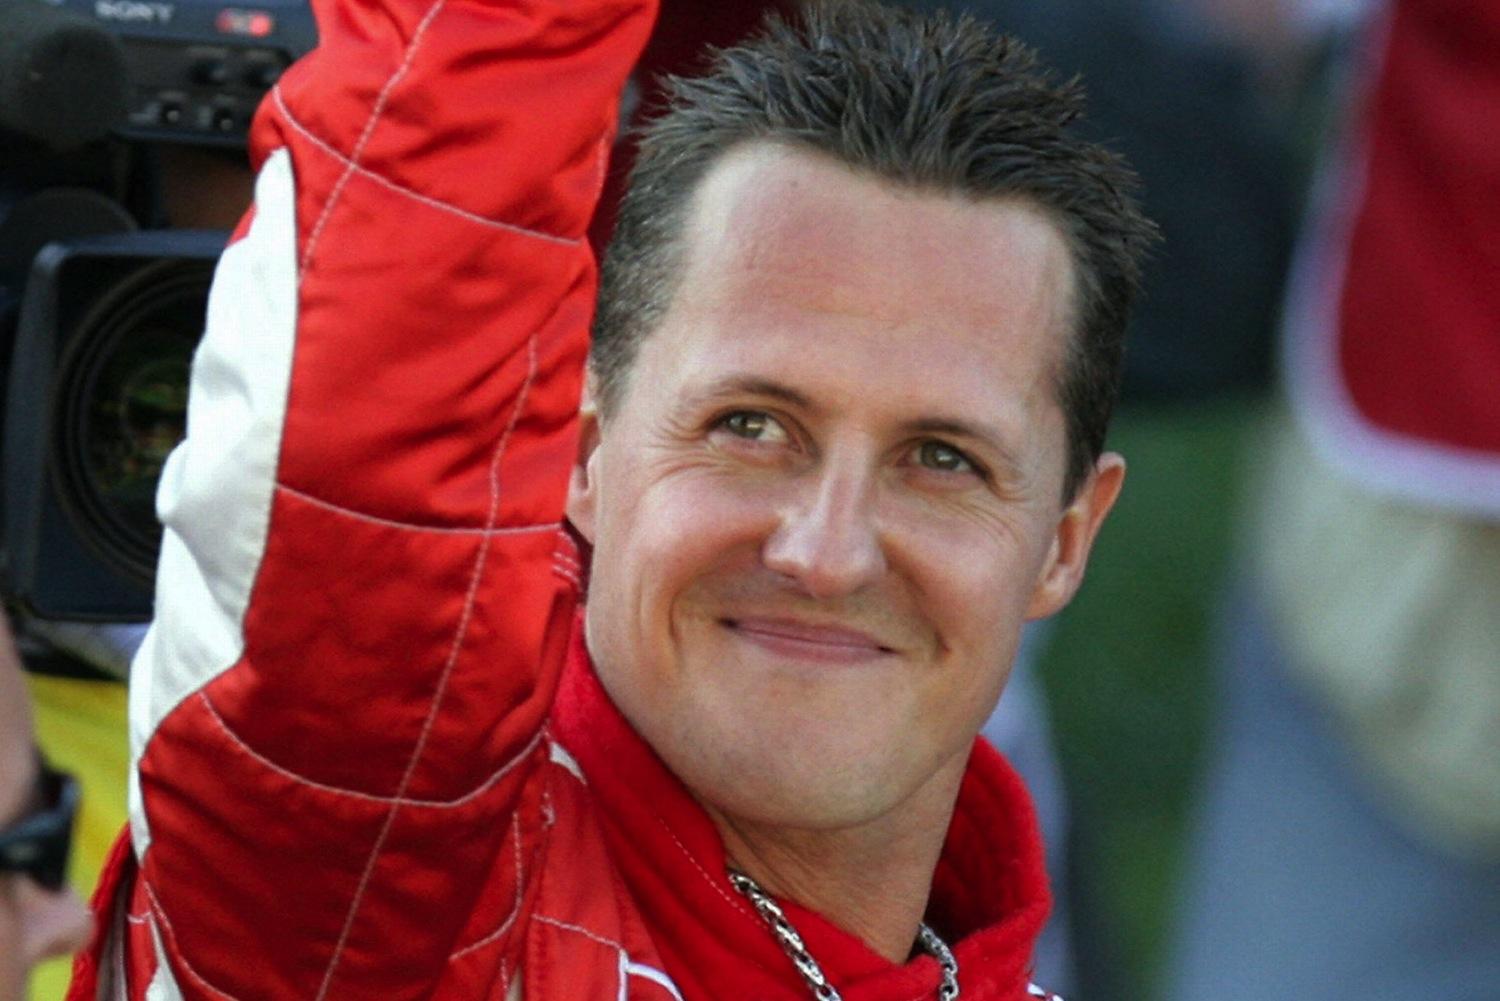 Michael Schumacher è stato portato in giro su una Mercedes per stimolare il suo cervello, cosa è accaduto